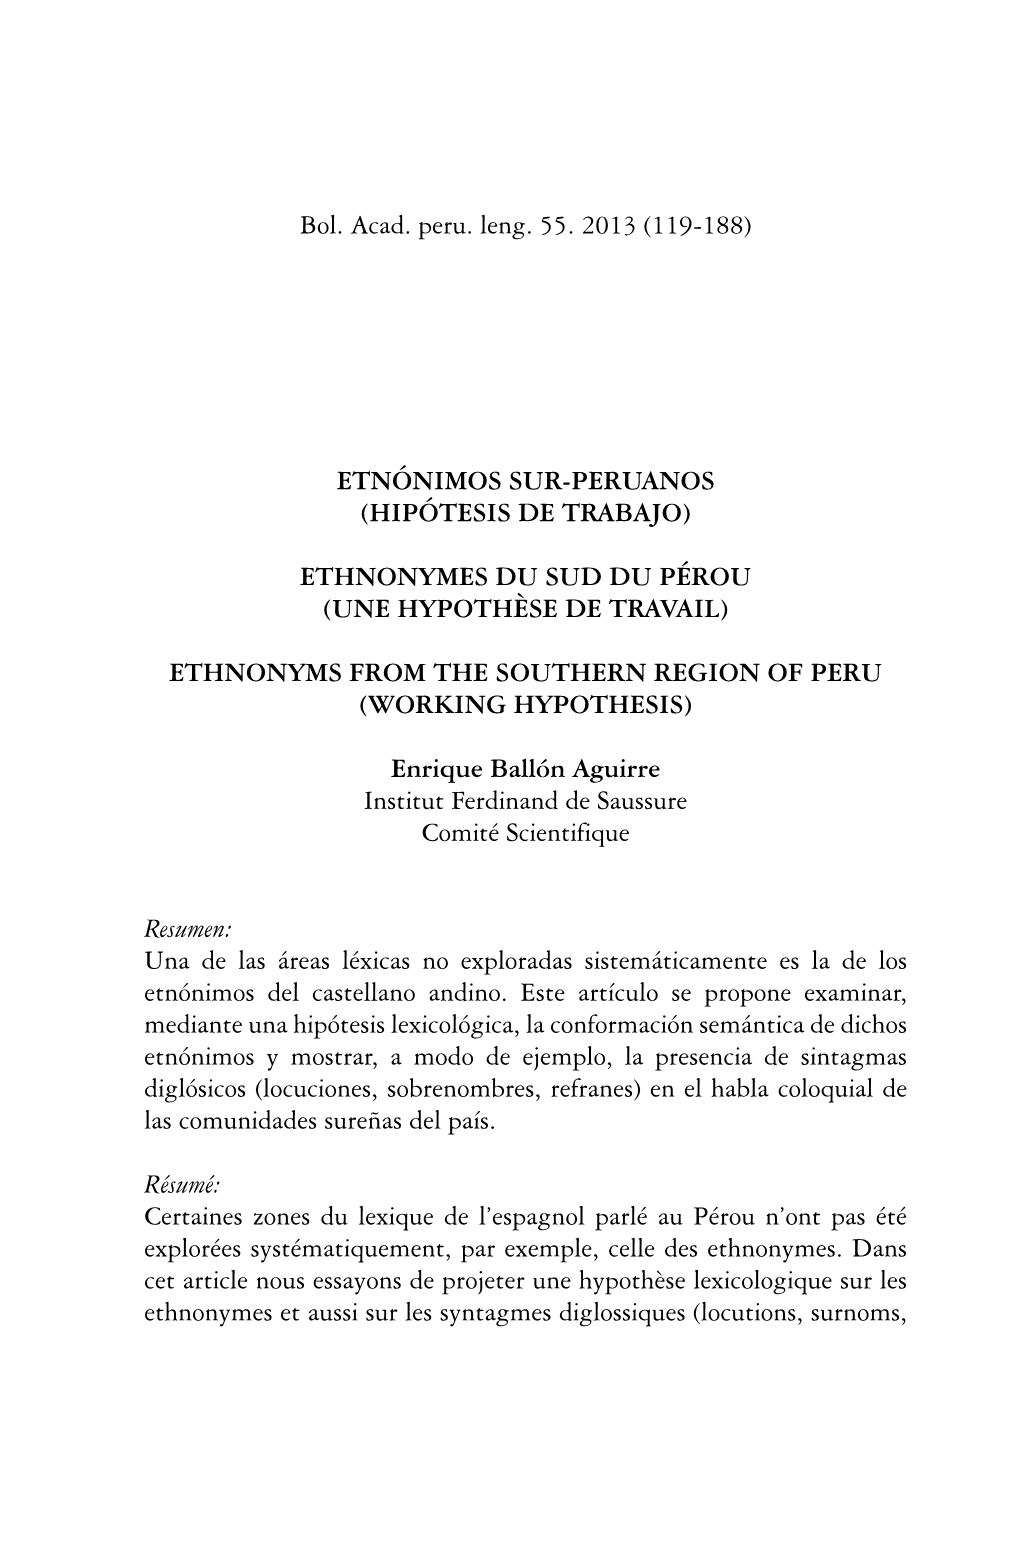 Bol. Acad. Peru. Leng. 55(55), 2013 119 Enrique Ballón Aguirre